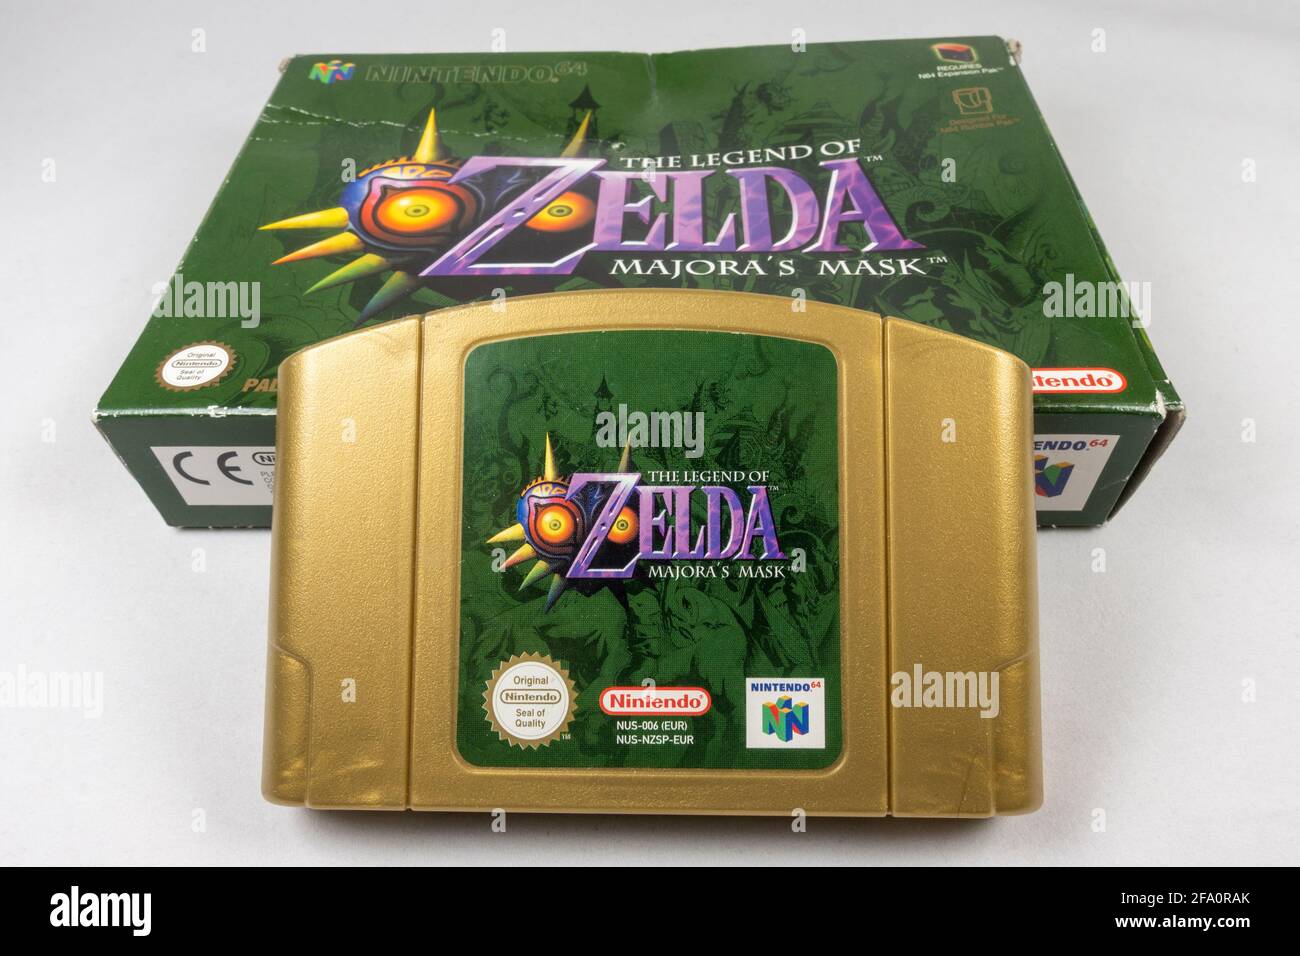 The Legend of Zelda: Majora's Mask Nintendo 64 or N64 video game 